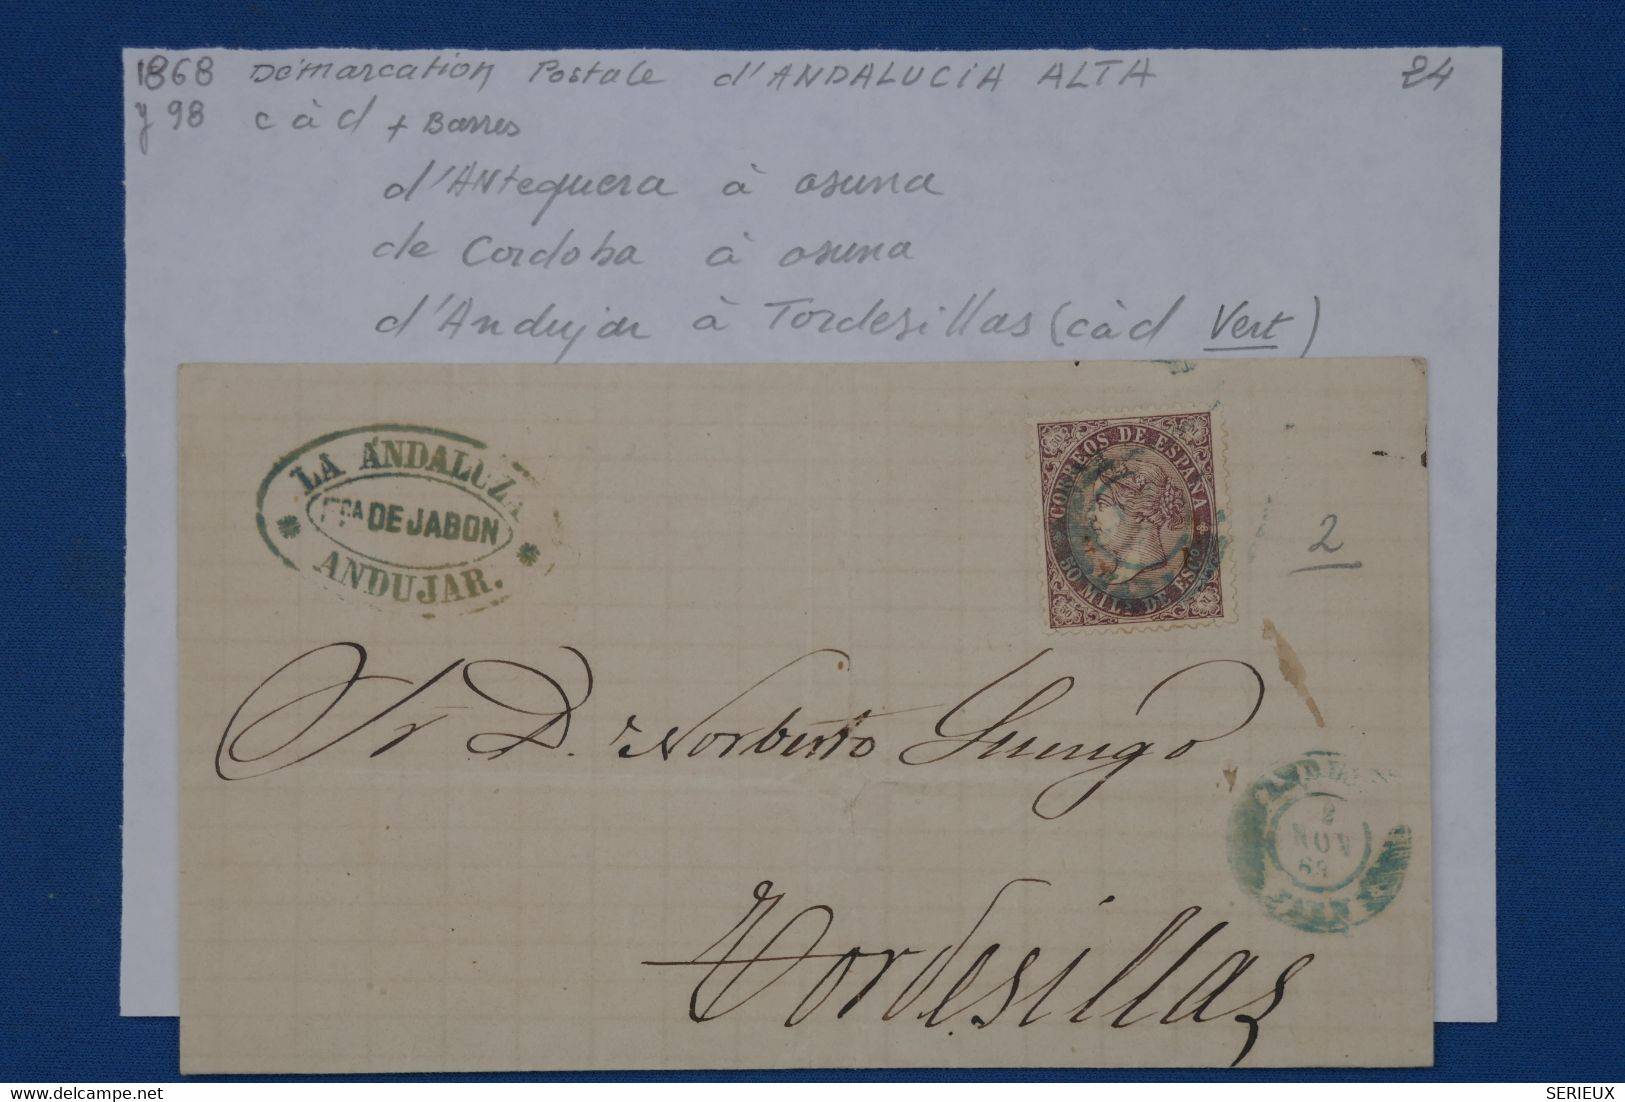 650 ESPANA  BELLE LETTRE 1868  ANDUJAR  POUR TORSEDILLAS  +CACHET VERT RARE ++AFFRANCH. INTERESSANT - Lettres & Documents